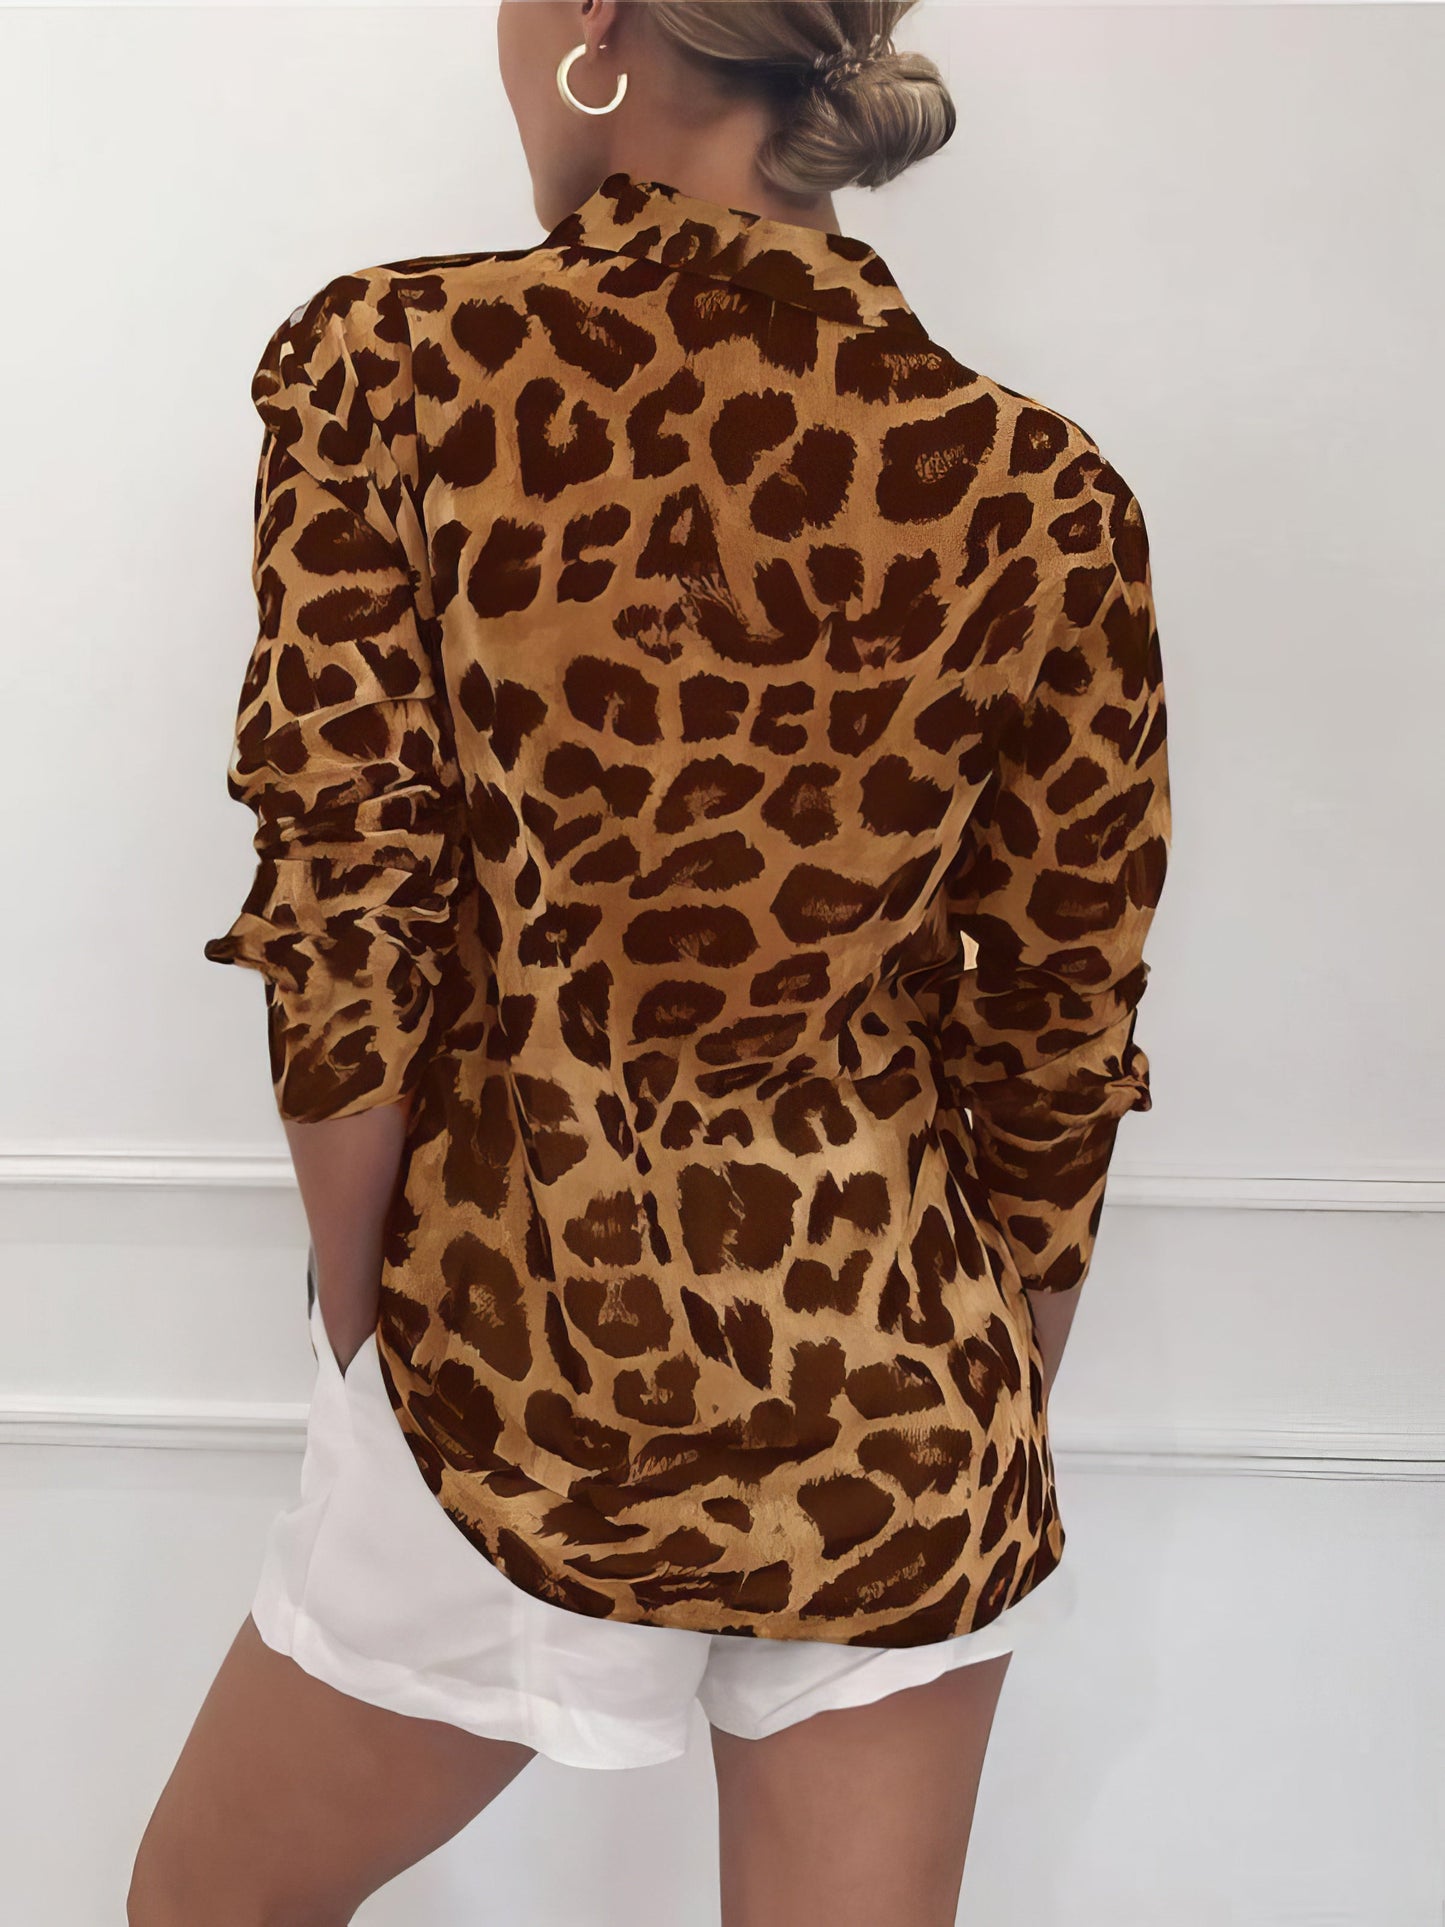 Blouses - Leopard Print Lapel Button Long Sleeve Blouse - MsDressly